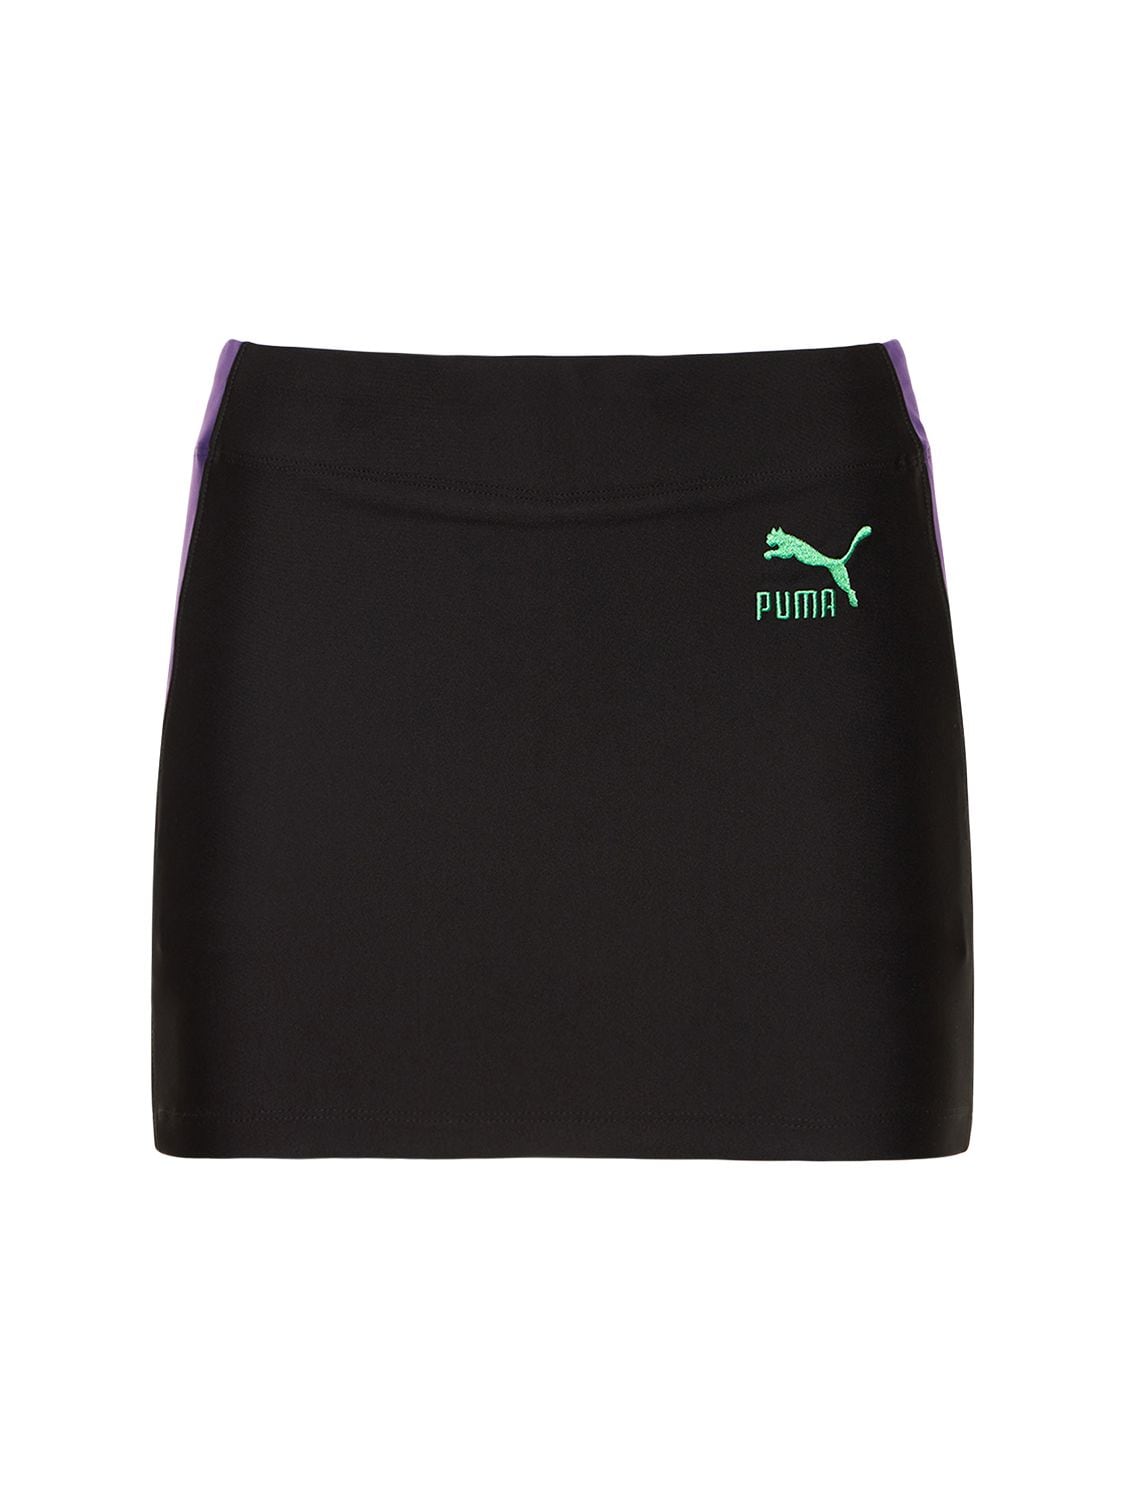 Puma X Dua Lipa Mini Skirt - PUMA - Modalova